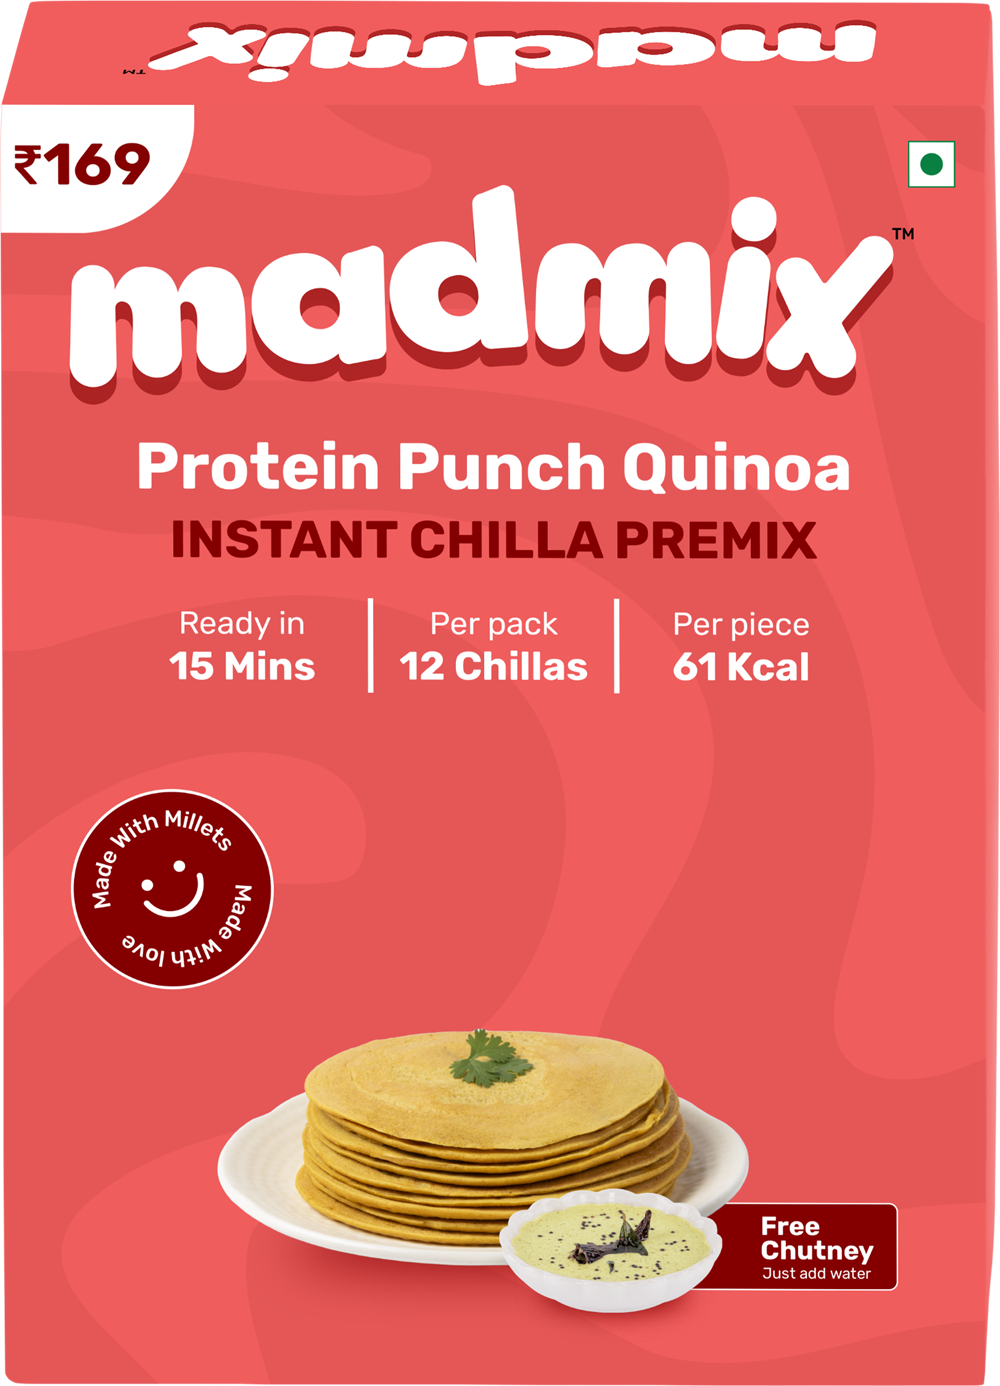 Protein Punch Quinoa Chilla Premix